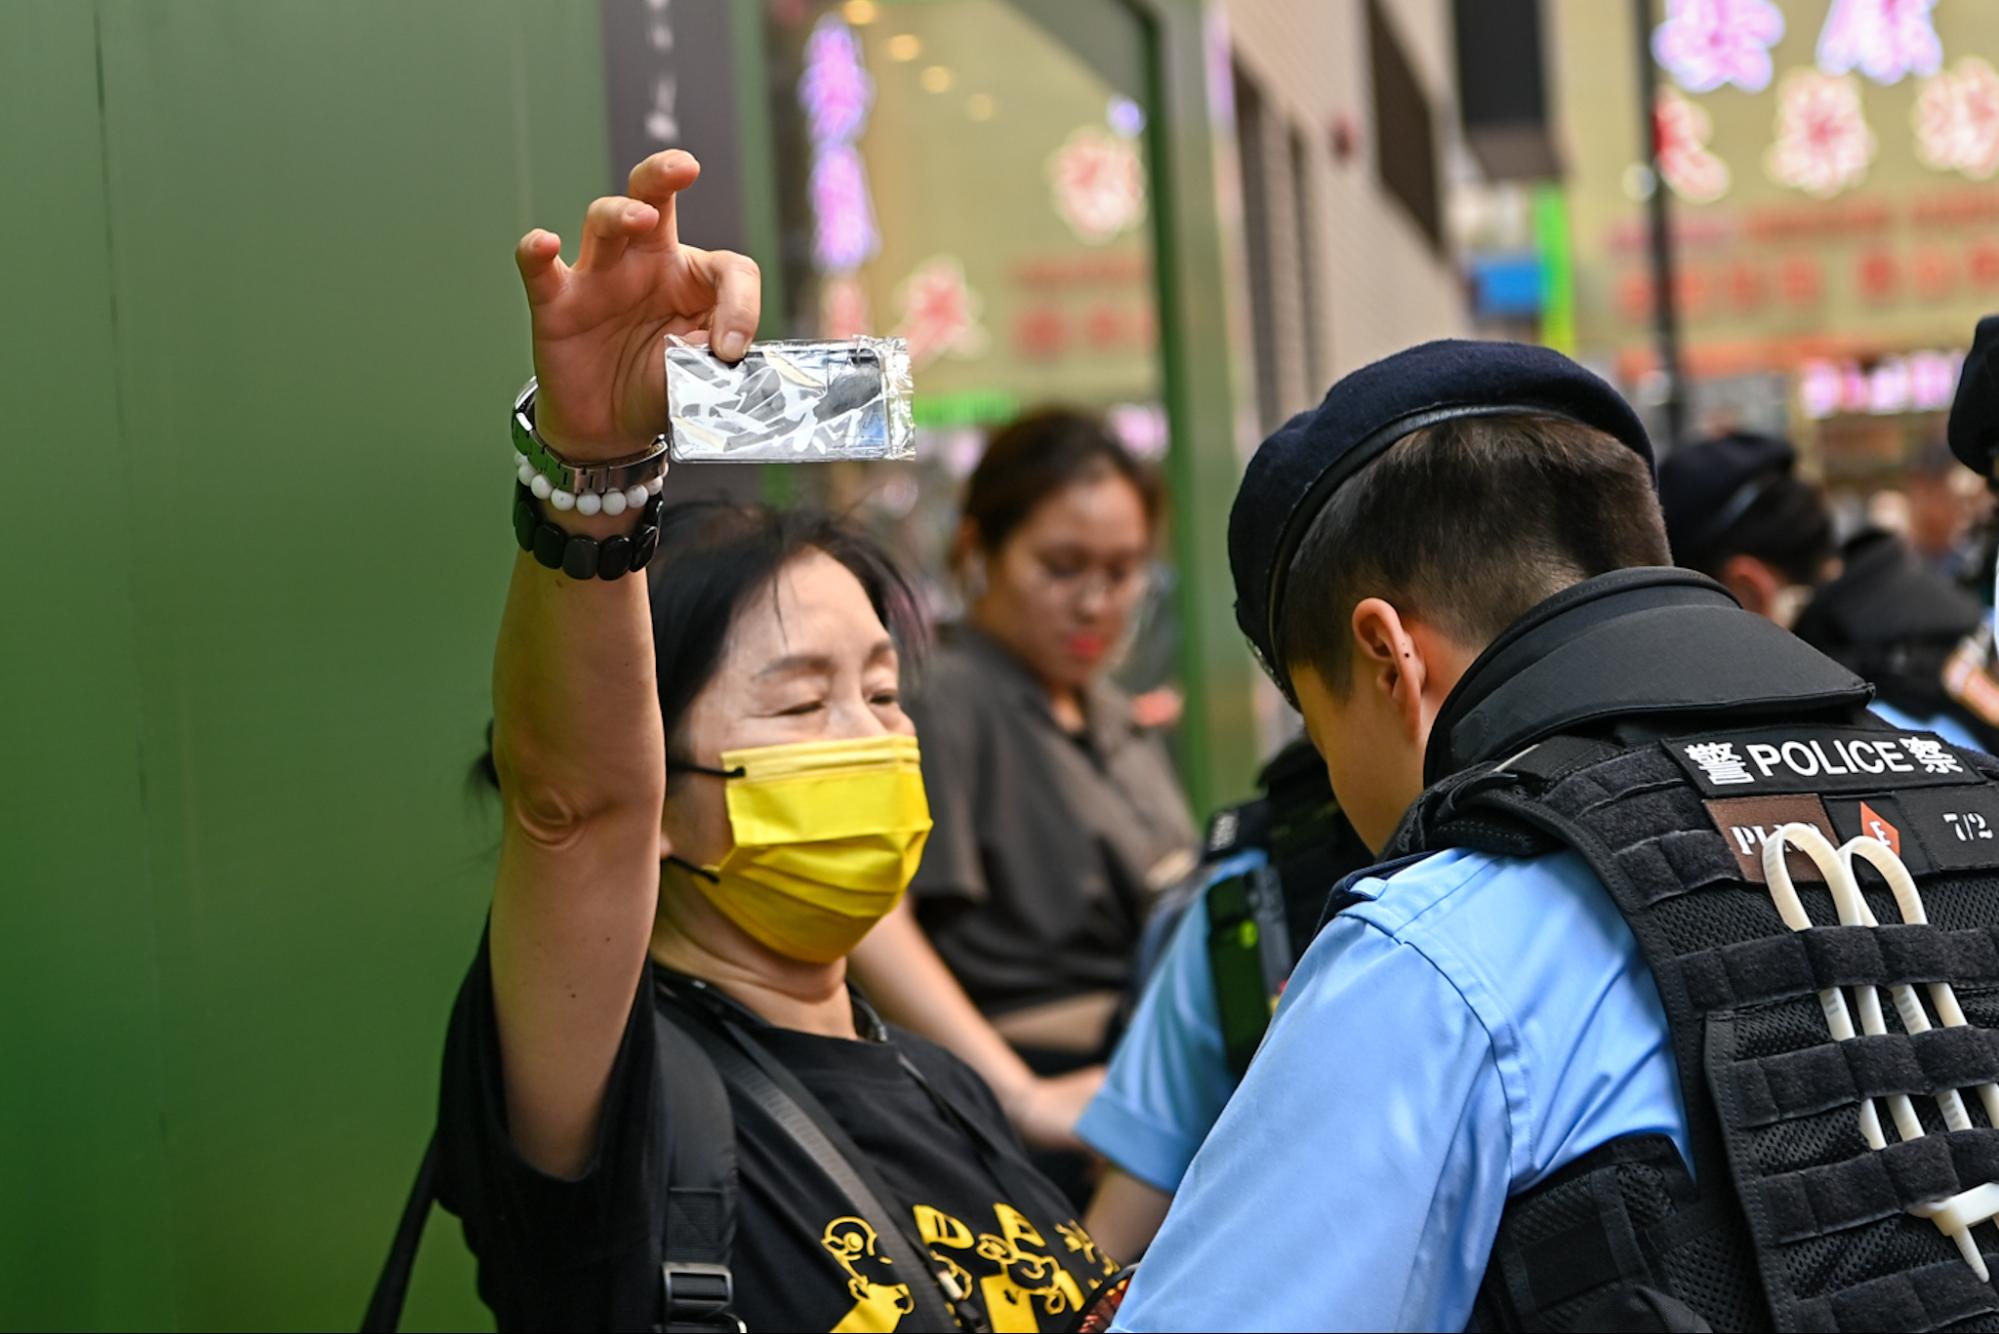 Một người phụ nữ đeo khẩu trang màu vàng đang giơ một tấm thẻ ghi chữ “Lương tâm” khi bị cảnh sát khám xét. (Ảnh: Sung Pi-lung/The Epoch Times)